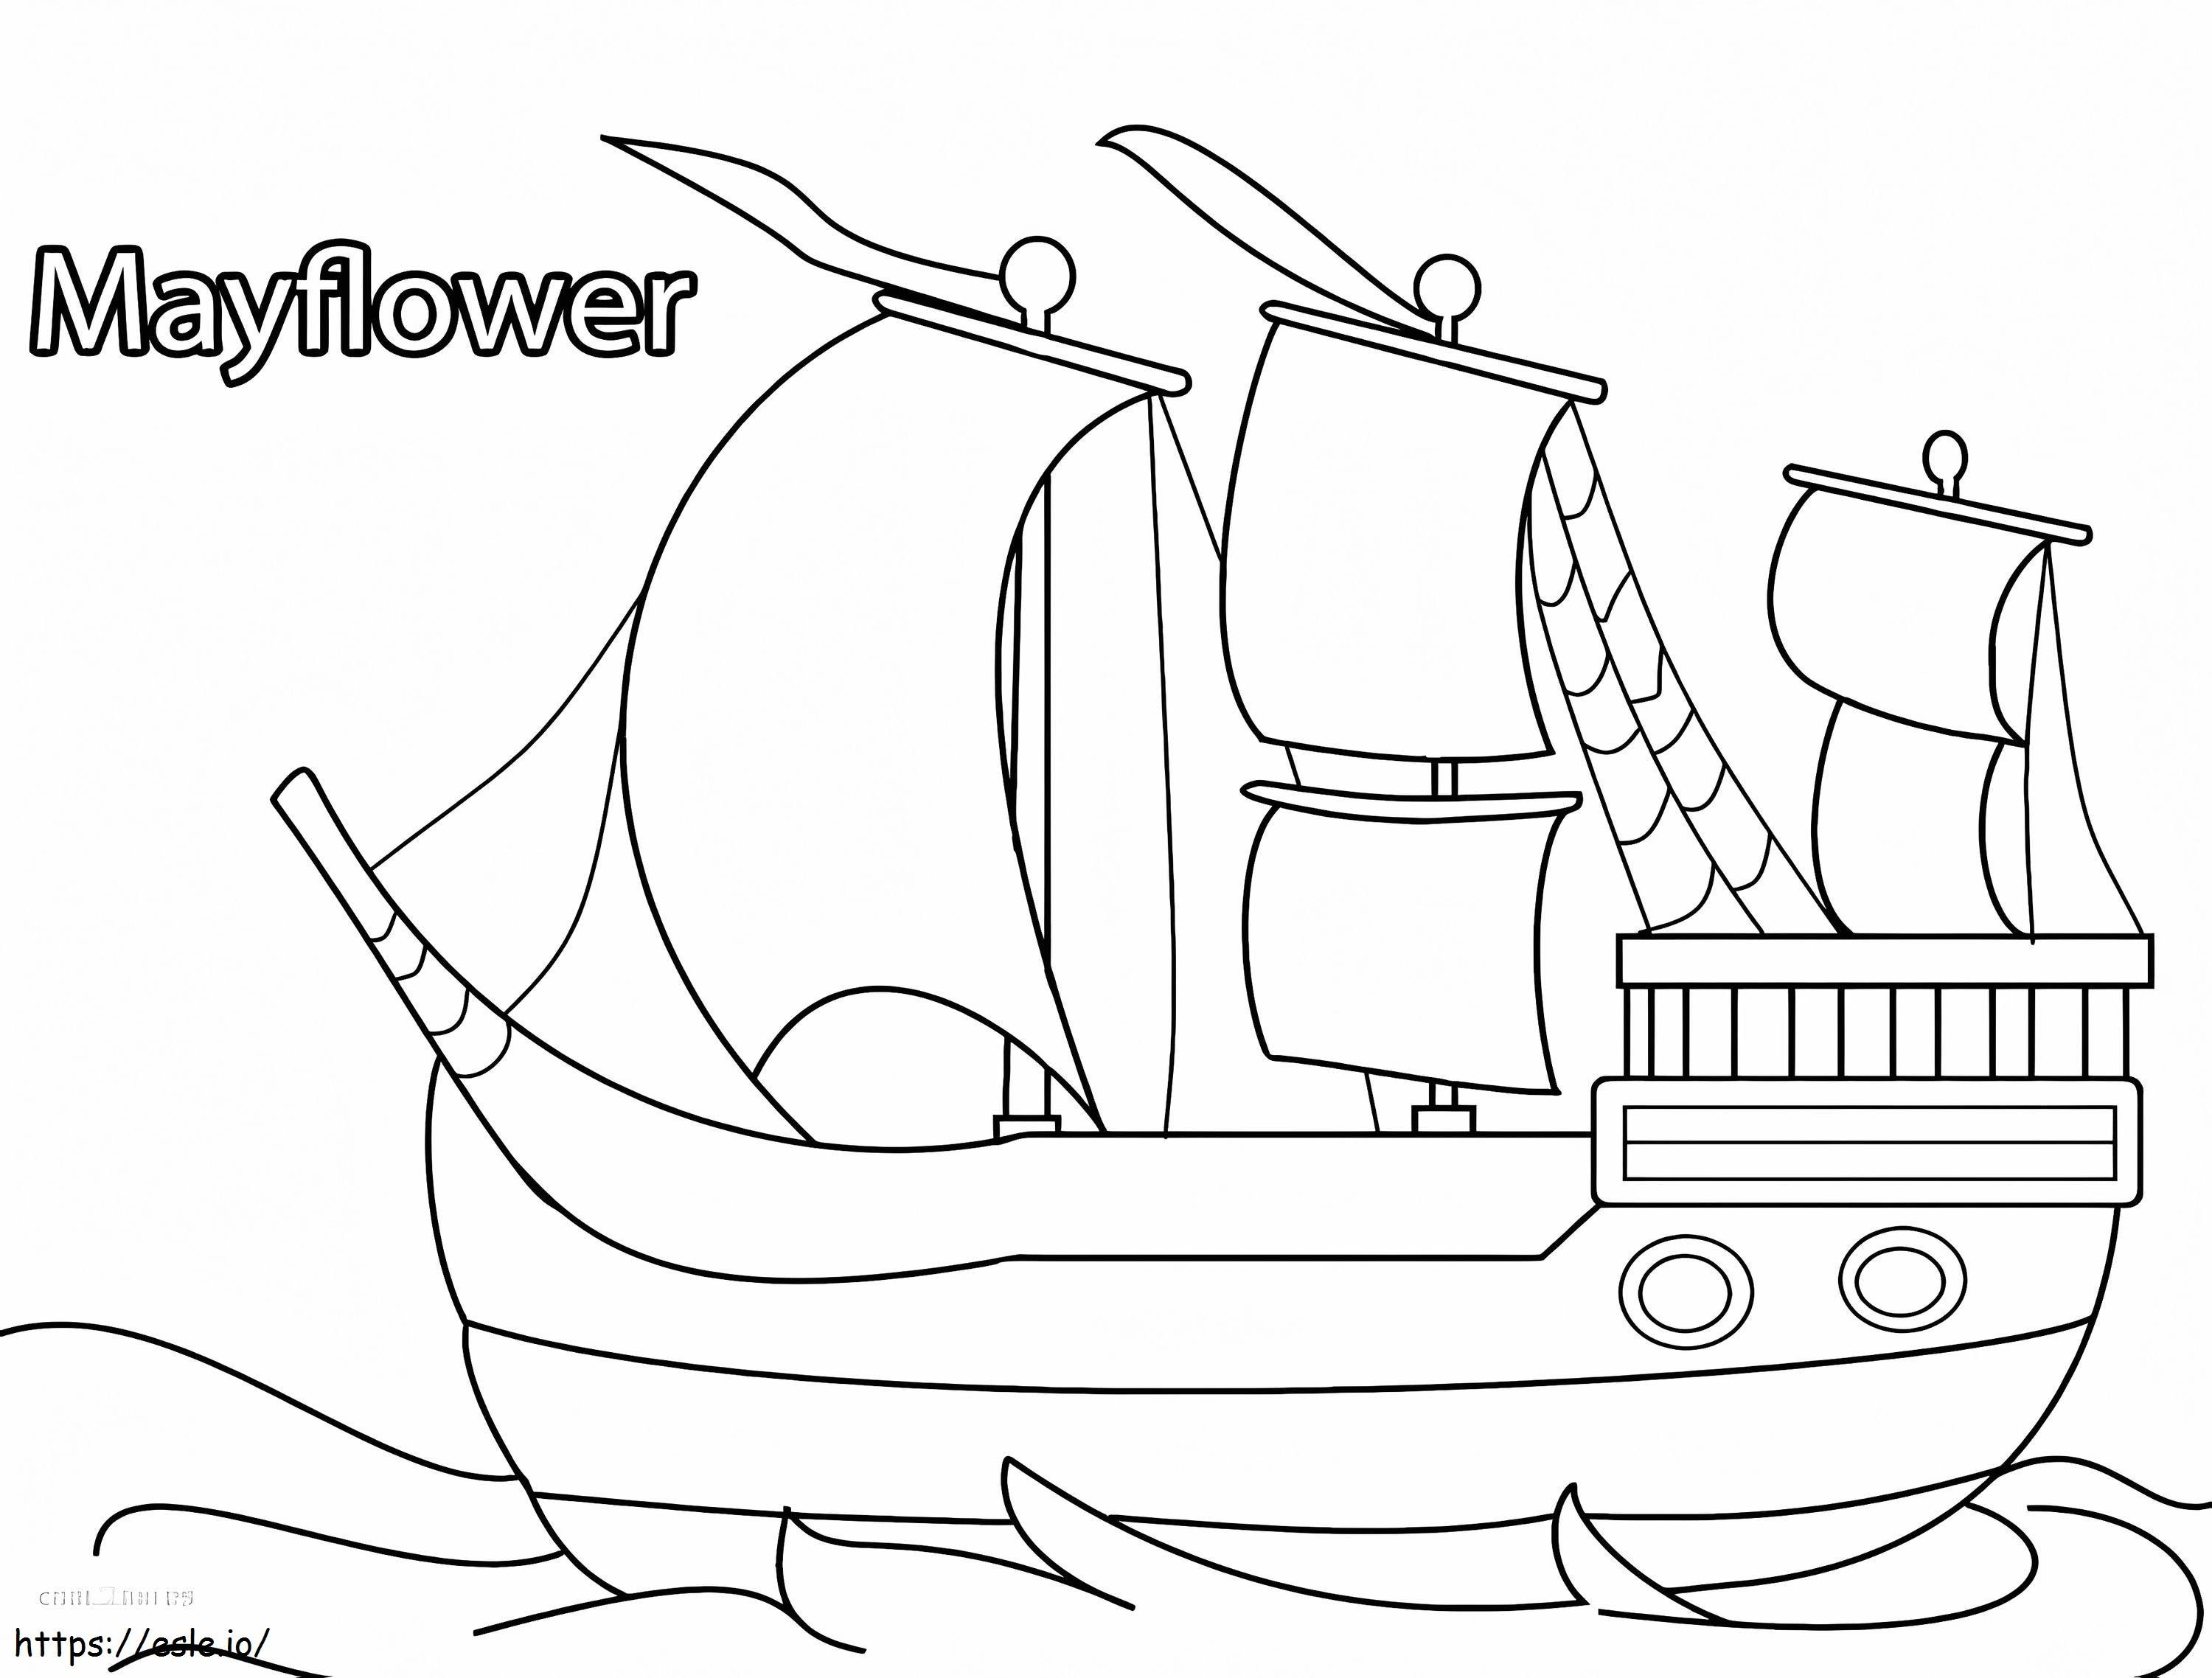 Mayflower 4 ausmalbilder